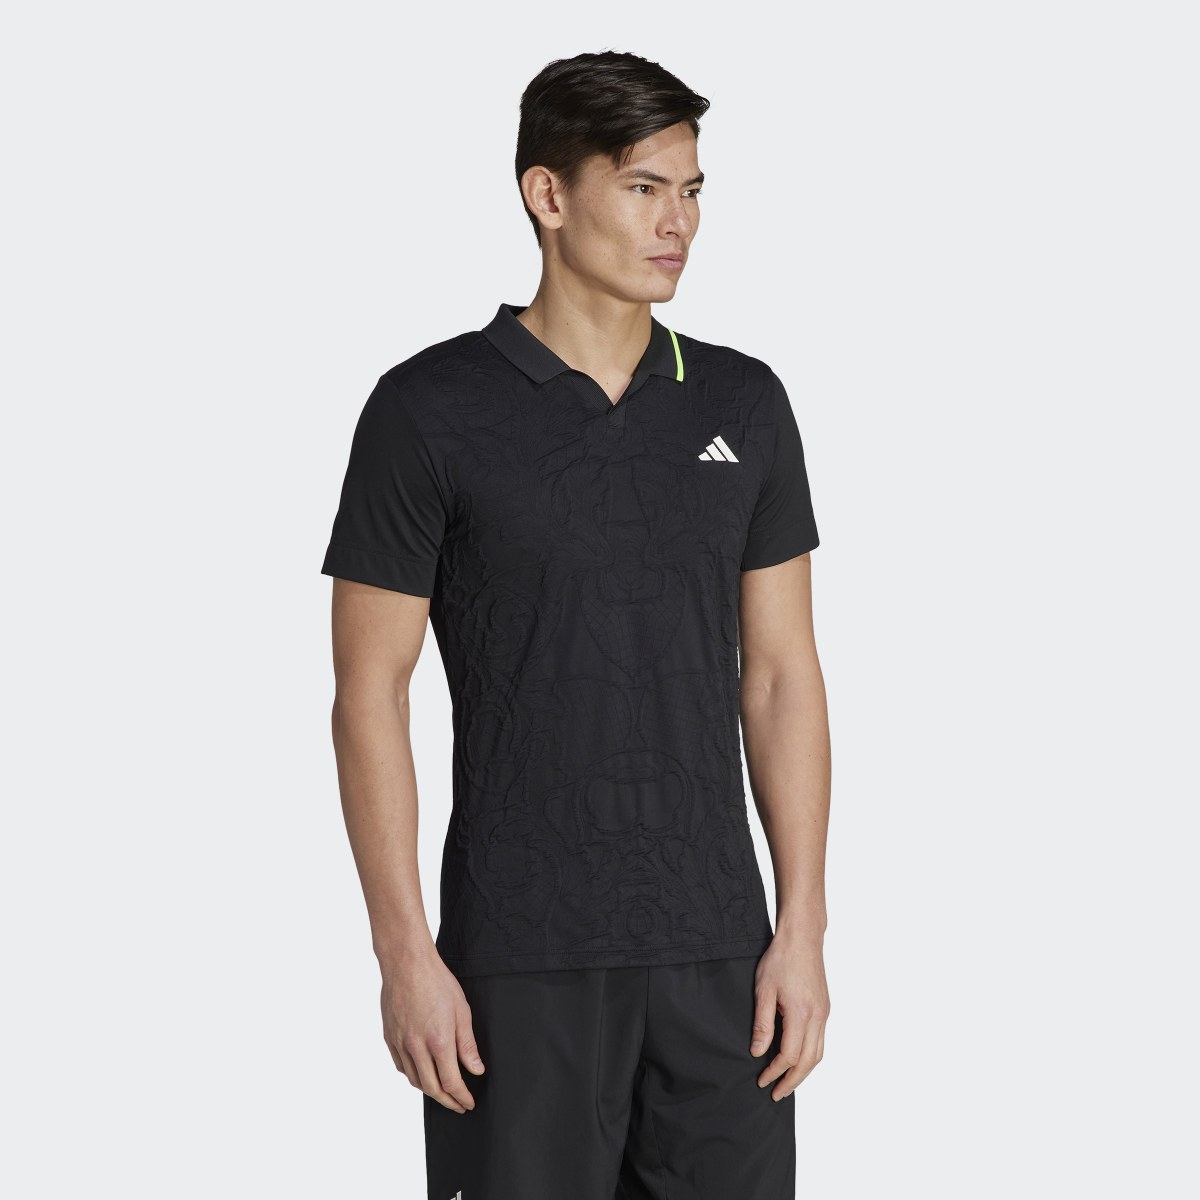 Adidas AEROREADY FreeLift Pro Tennis Polo Shirt. 4